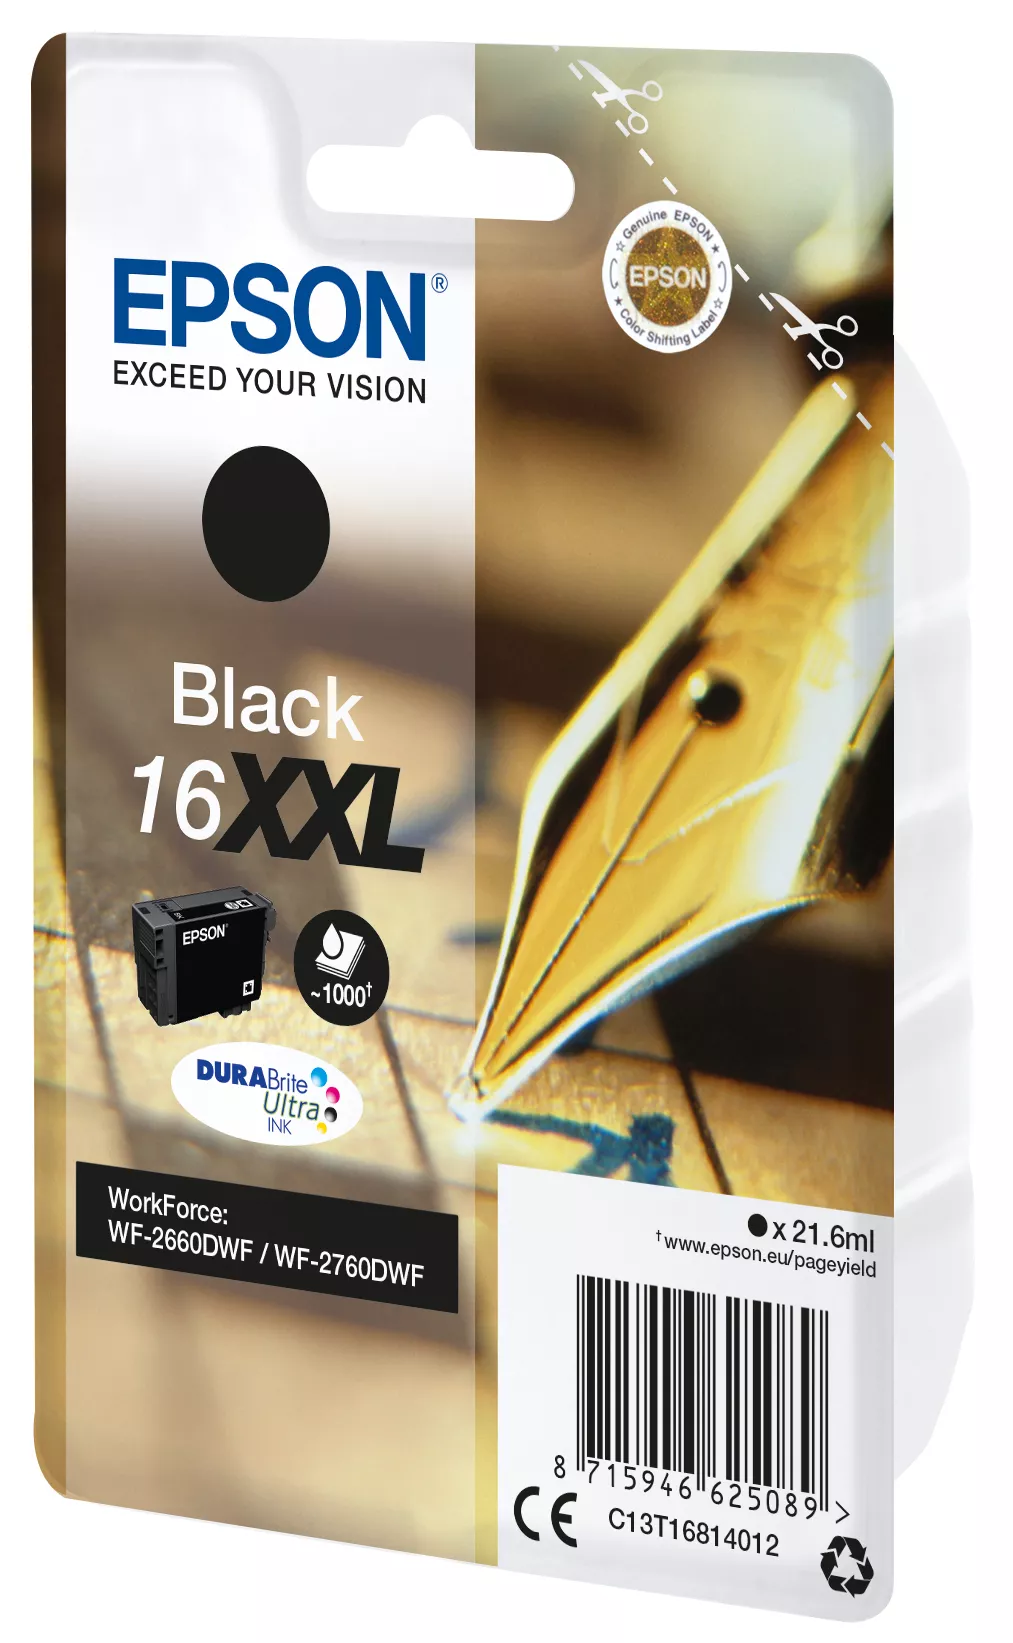 Vente EPSON 16XXL cartouche dencre noir très haute capacité Epson au meilleur prix - visuel 2